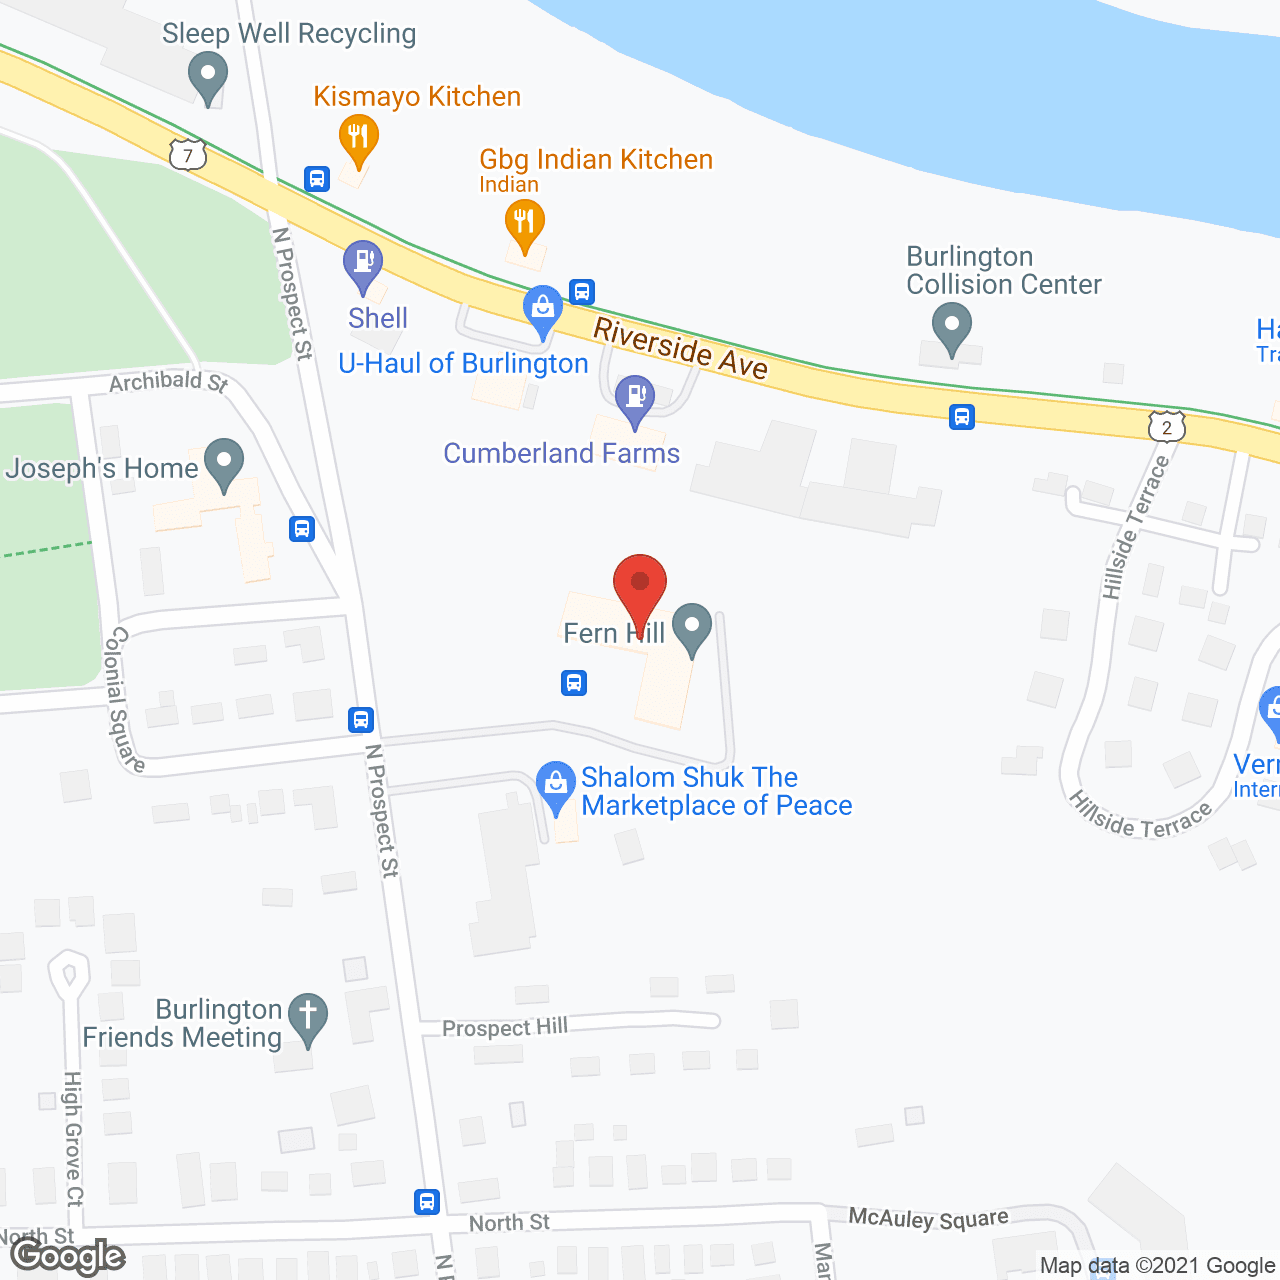 Fern Hill in google map